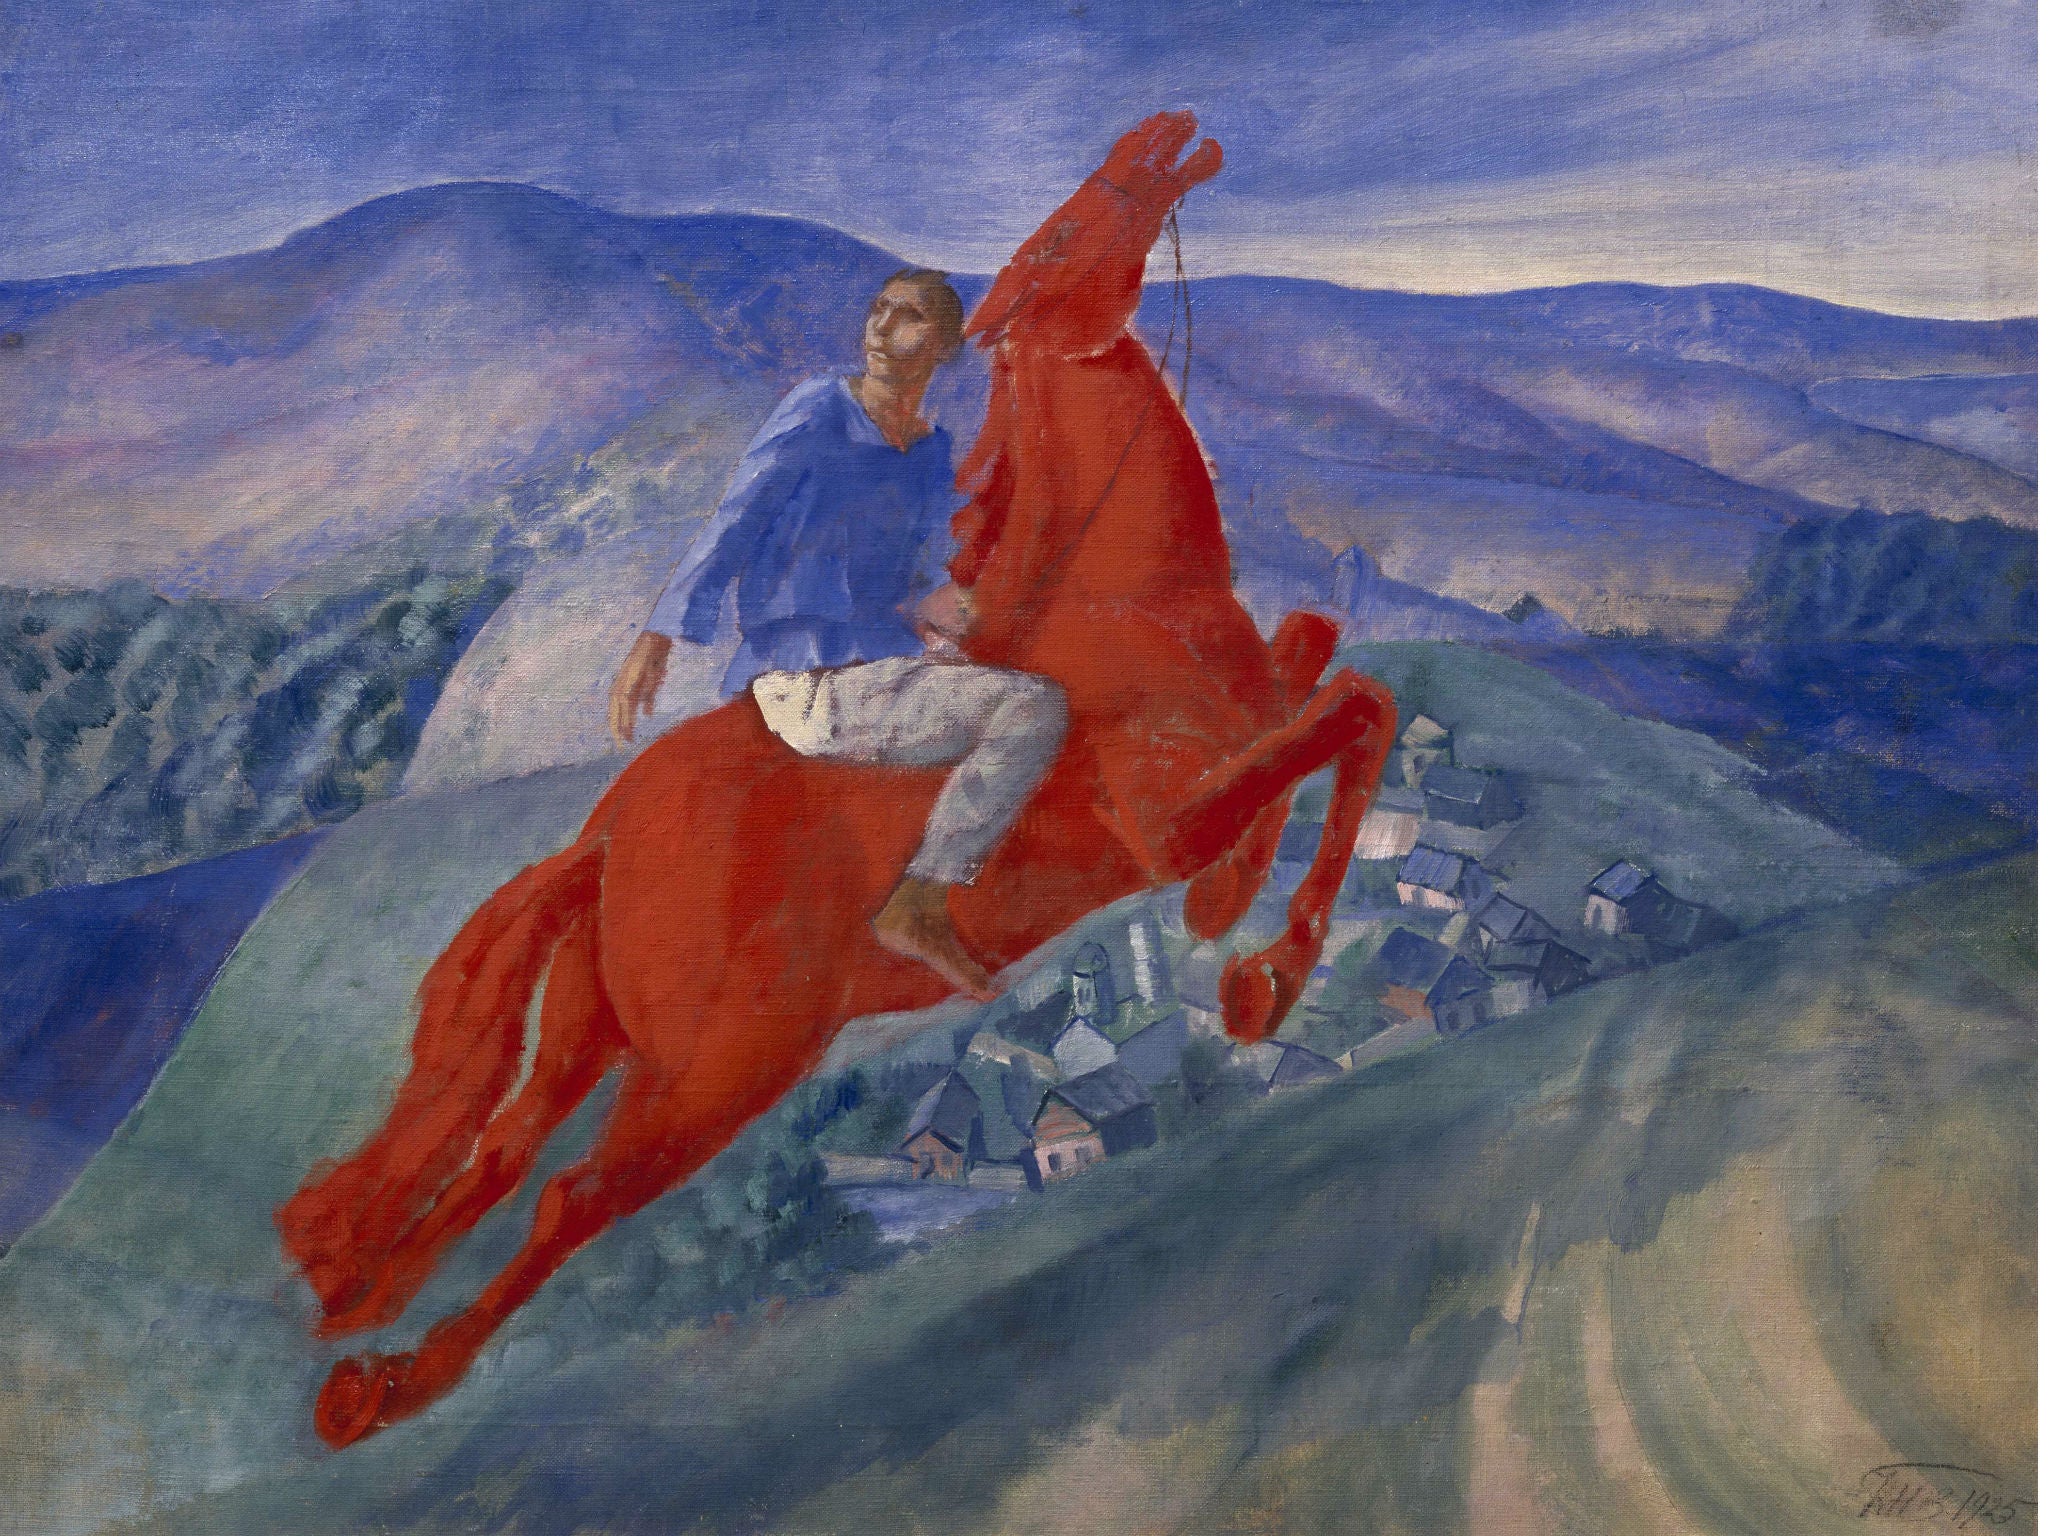 Kuzma Petrov-Vodkin, 'Fantasy', 1925